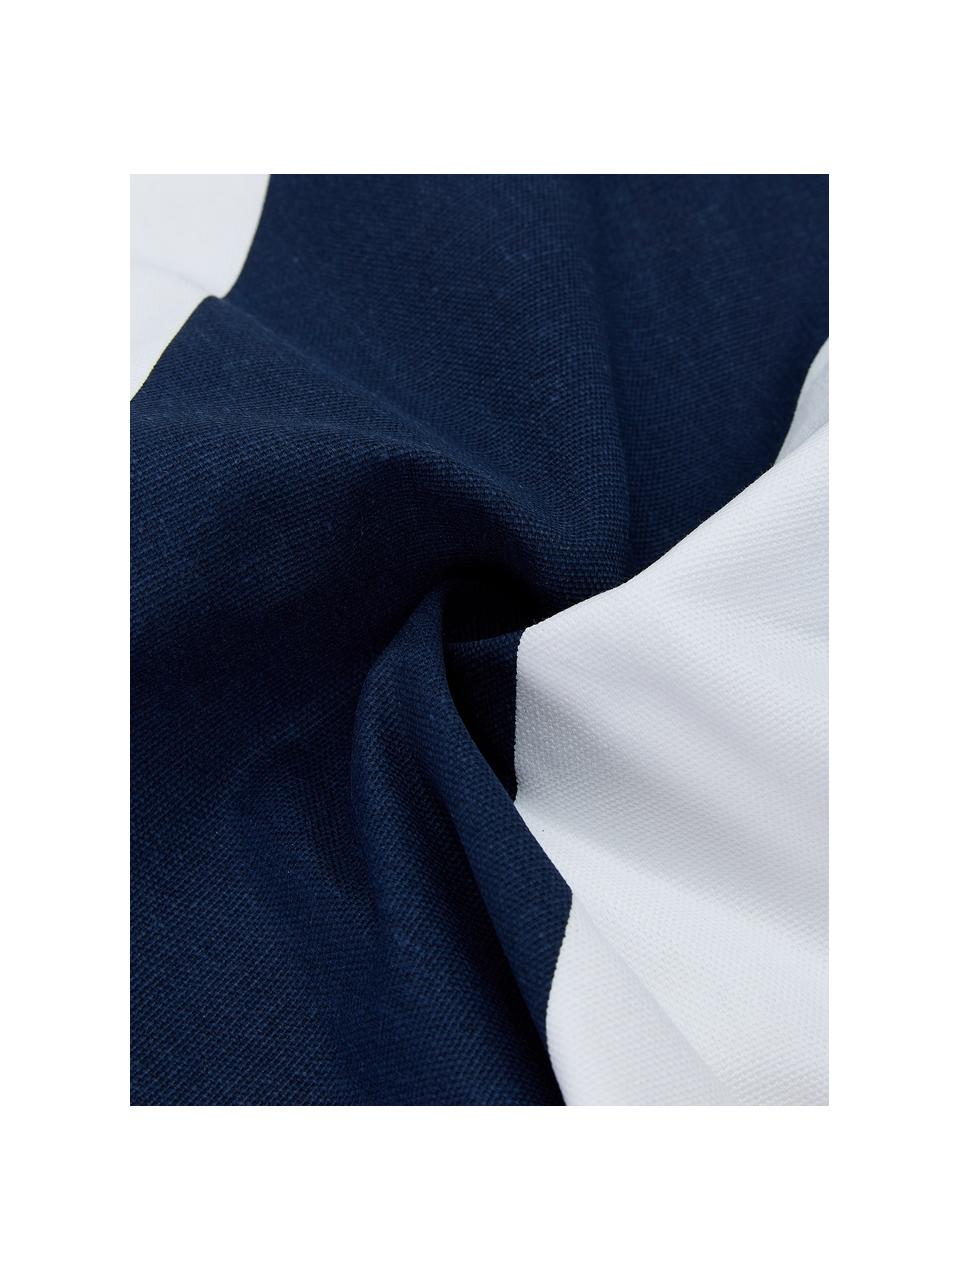 Housse de coussin rectangulaire Ren, 100 % coton, Blanc, bleu foncé, larg. 30 x long. 50 cm